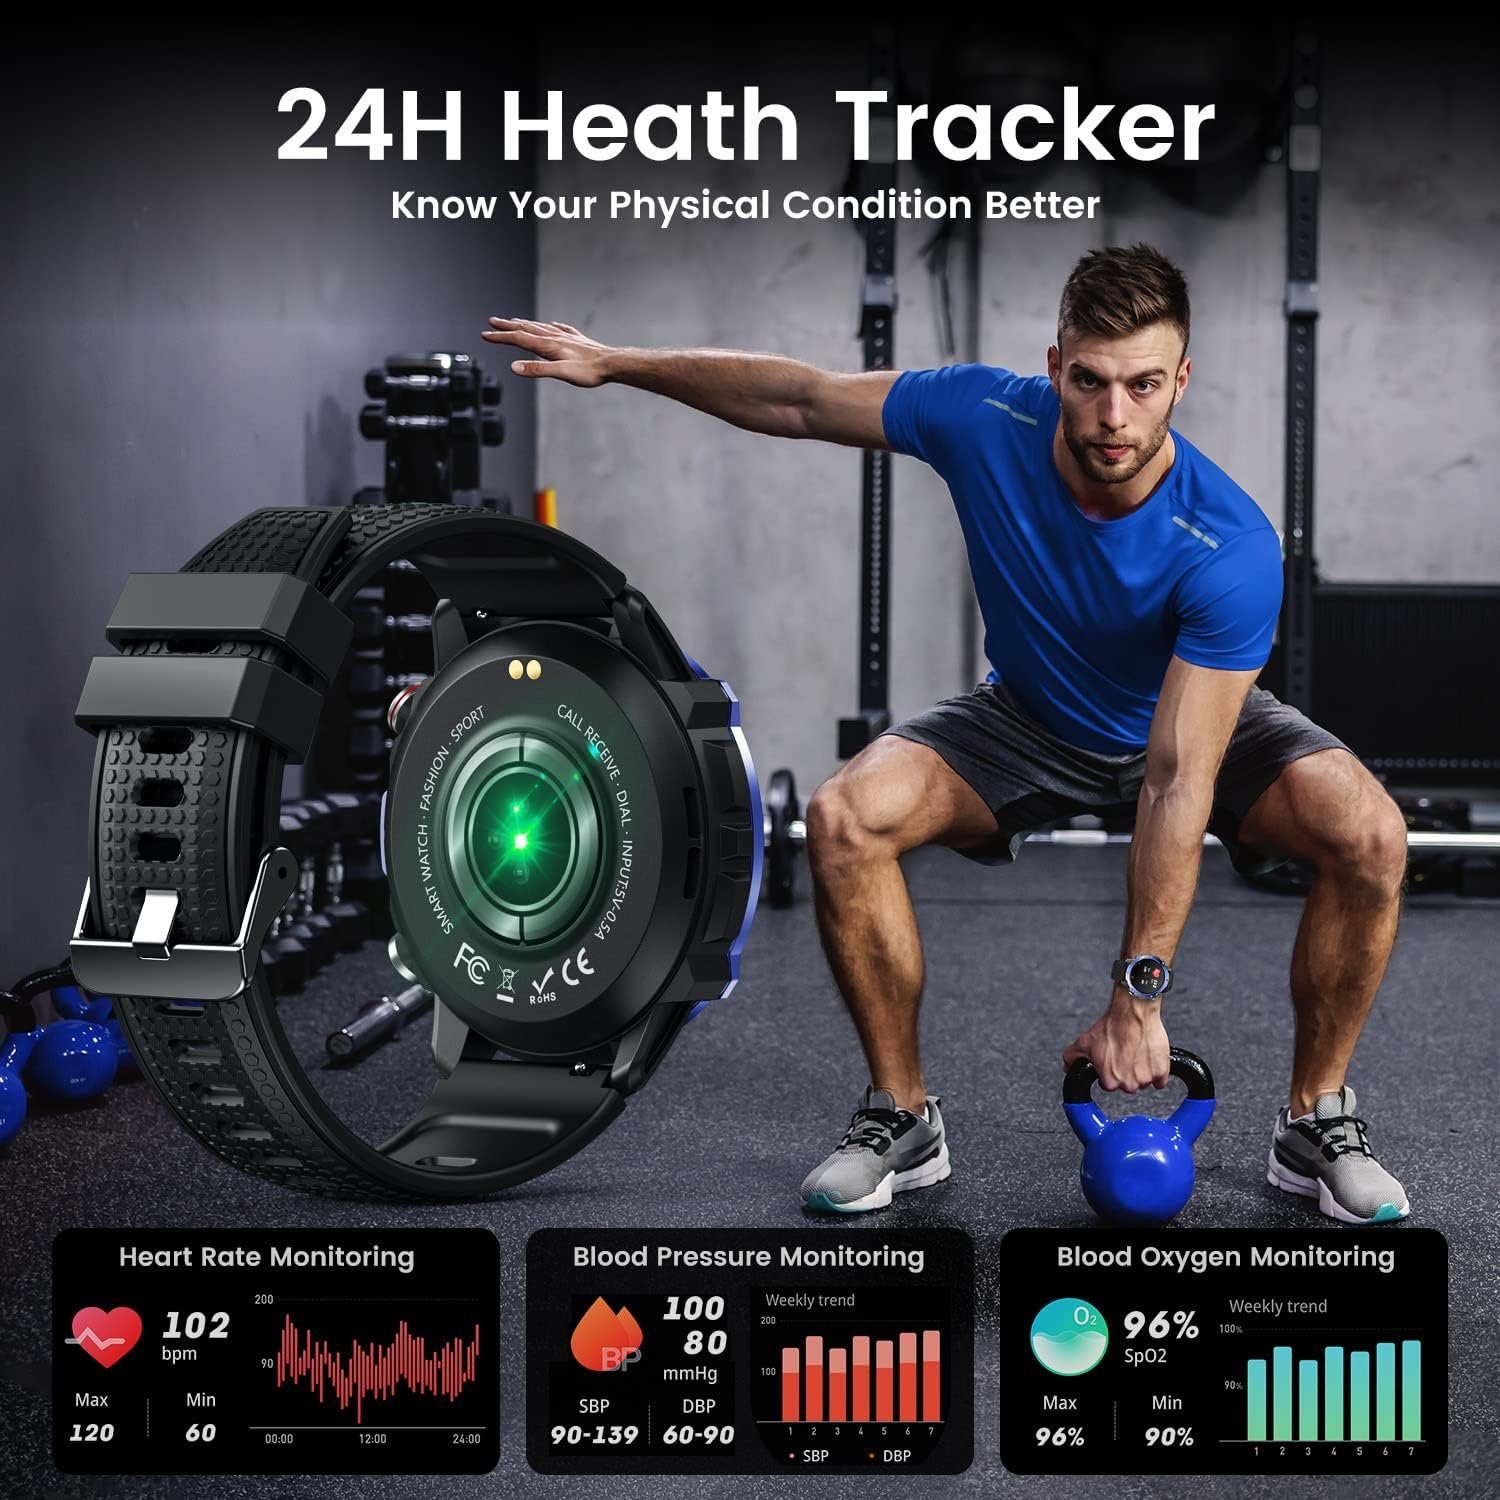 niizero Fur Herren mit Telefonfunktion: Fitness Tracker Armband Smartwatch  (1.42 Zoll, Android / iOS), mit Pulsmesser Schlafmonitor  SchrittzählerIP67Wasserdicht100+Sportmodi